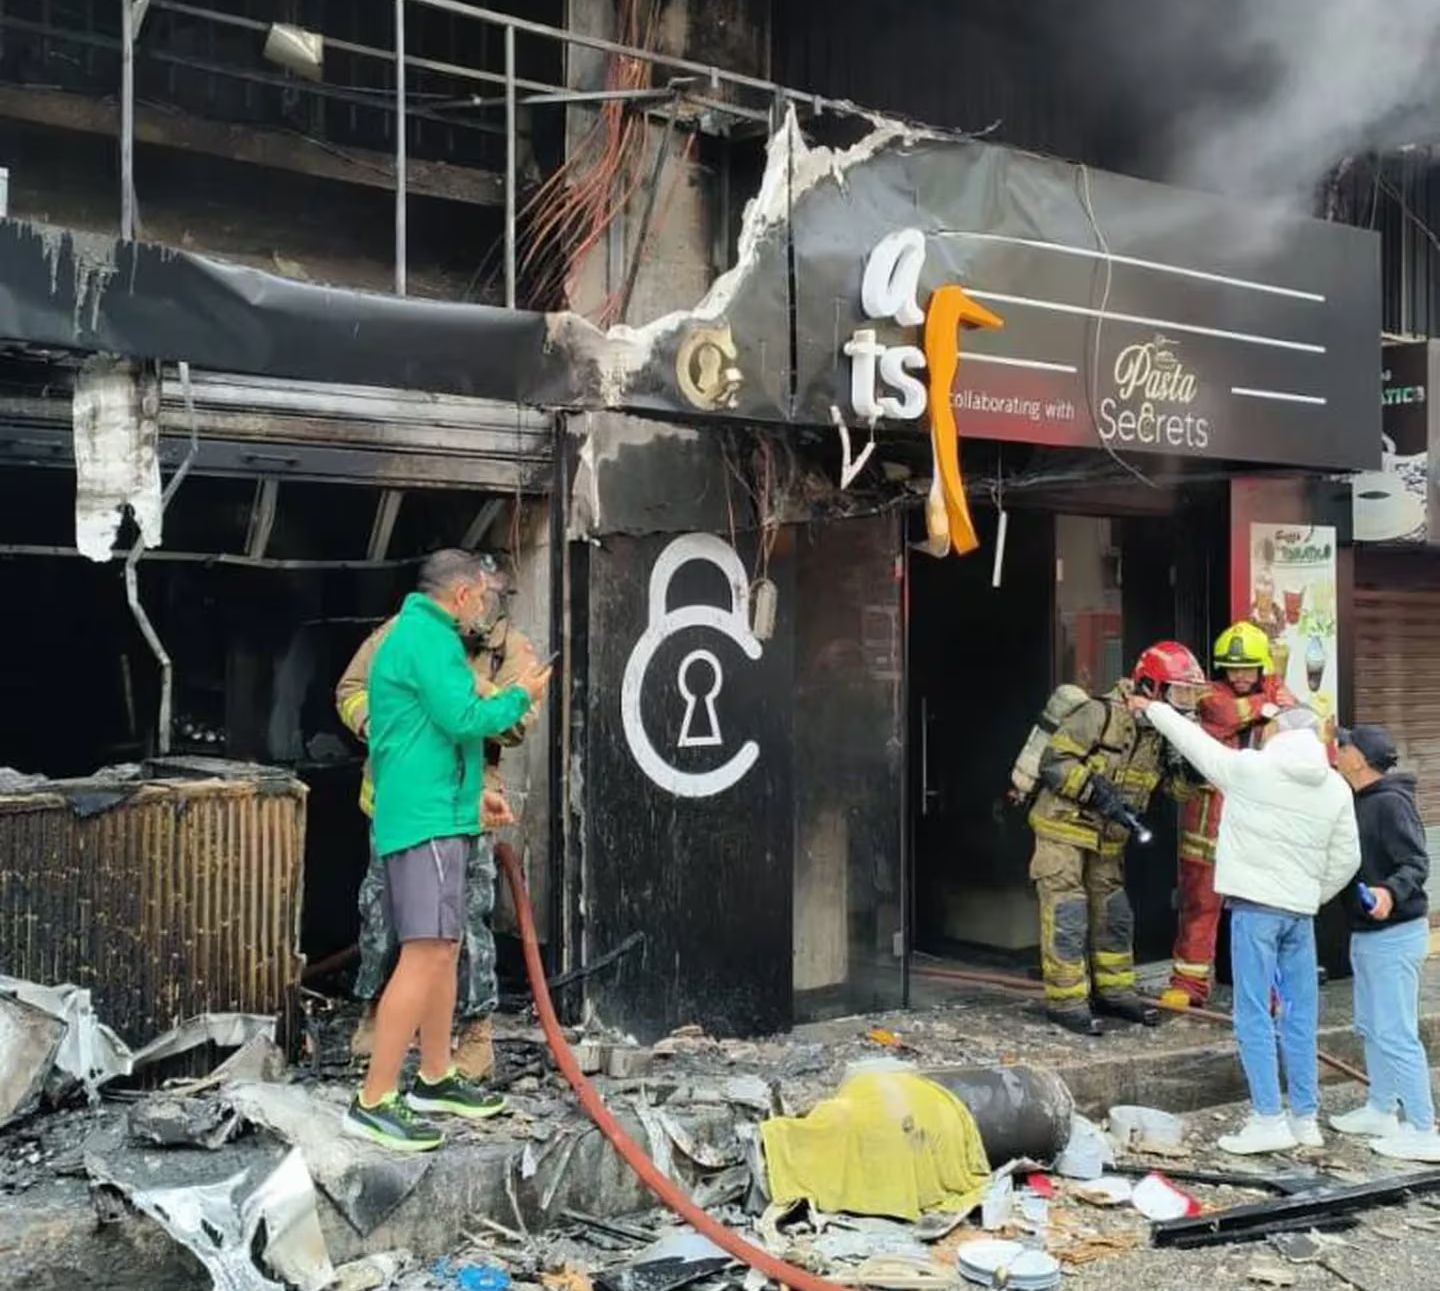 Según indicaron los bomberos, la explosión y el incendio en el local Pizza Secrets fueron provocados por “una fuga de gas”.